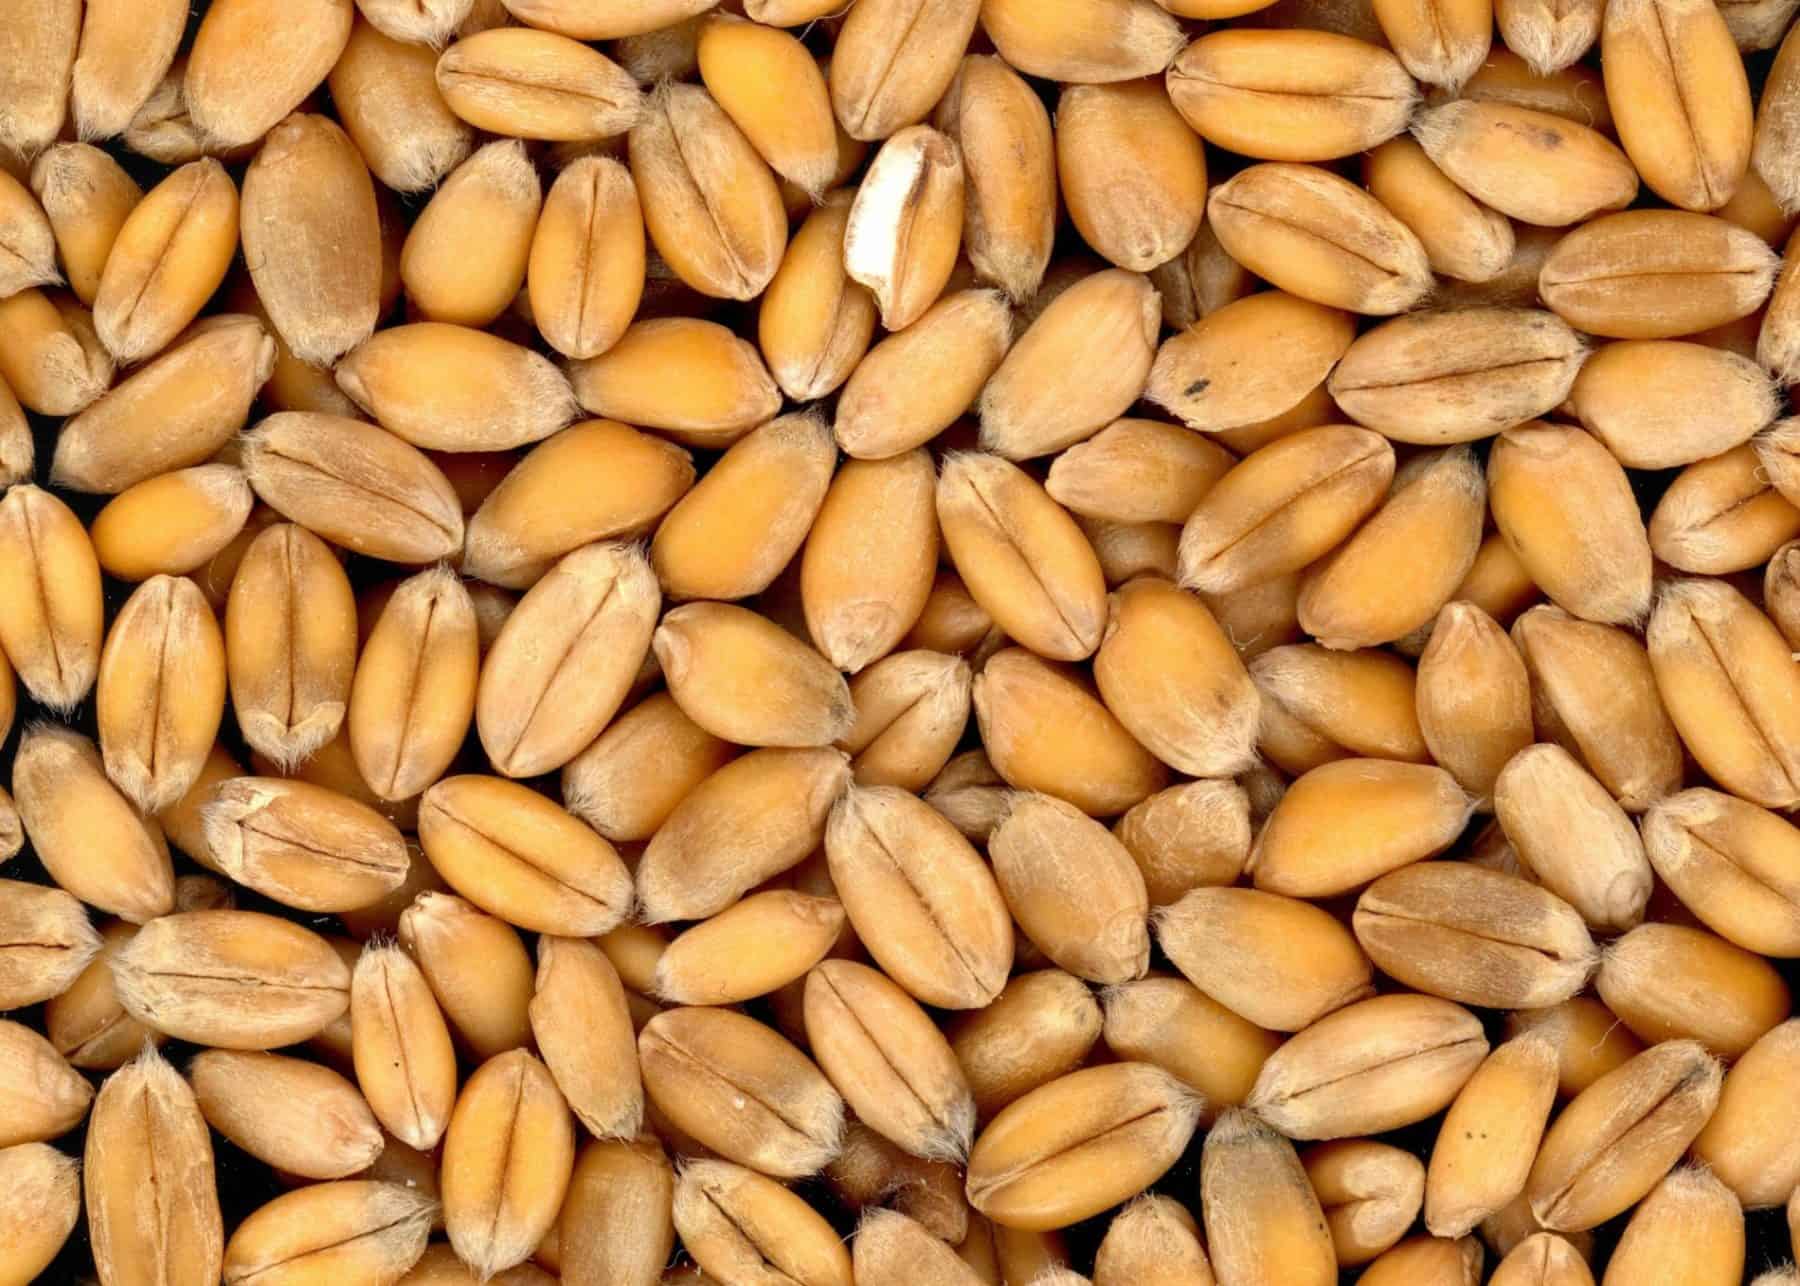 food grains of karnataka